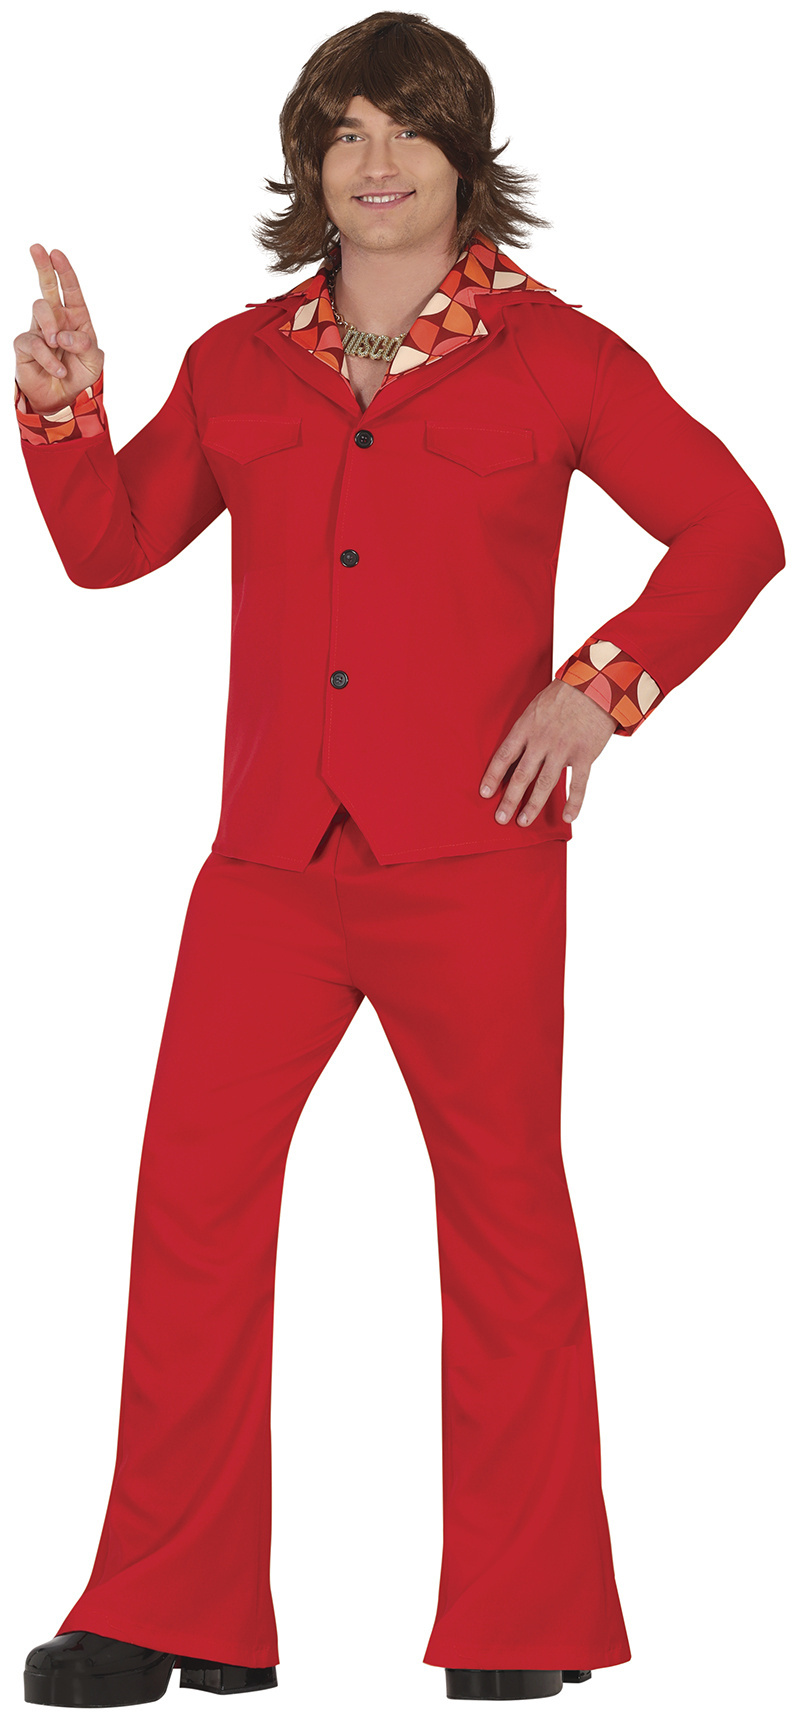 Costume disco orange pour homme - Déguisement homme - v19623